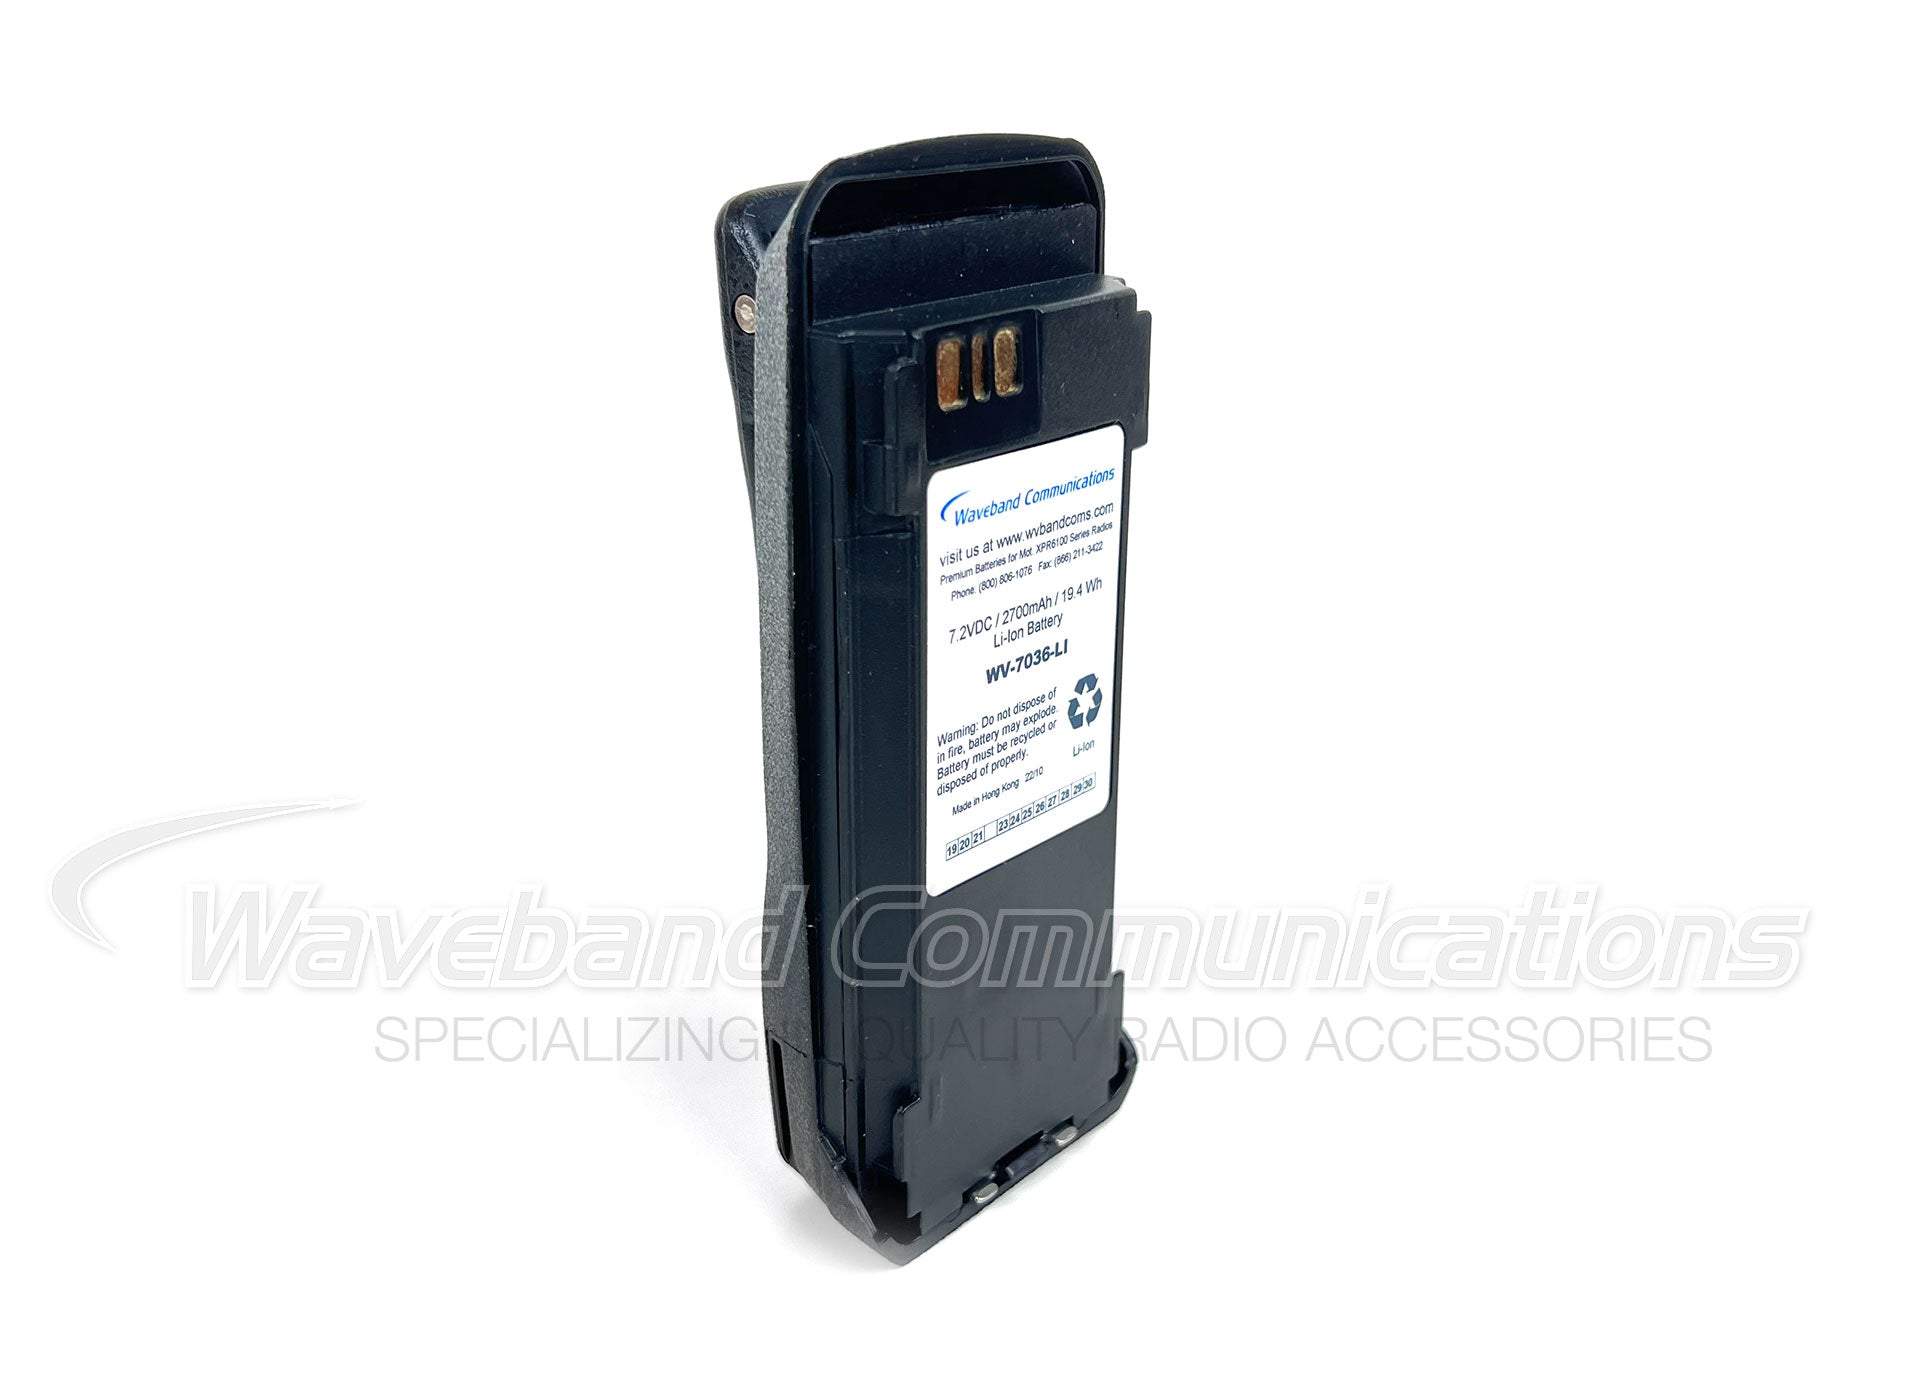 Bateria intrinsecamente segura para Motorola XPR6100, XPR6300, XPR6350, XPR6380, XPR6500, XPR6550, XPR6580 e Vertex Standard VXD720